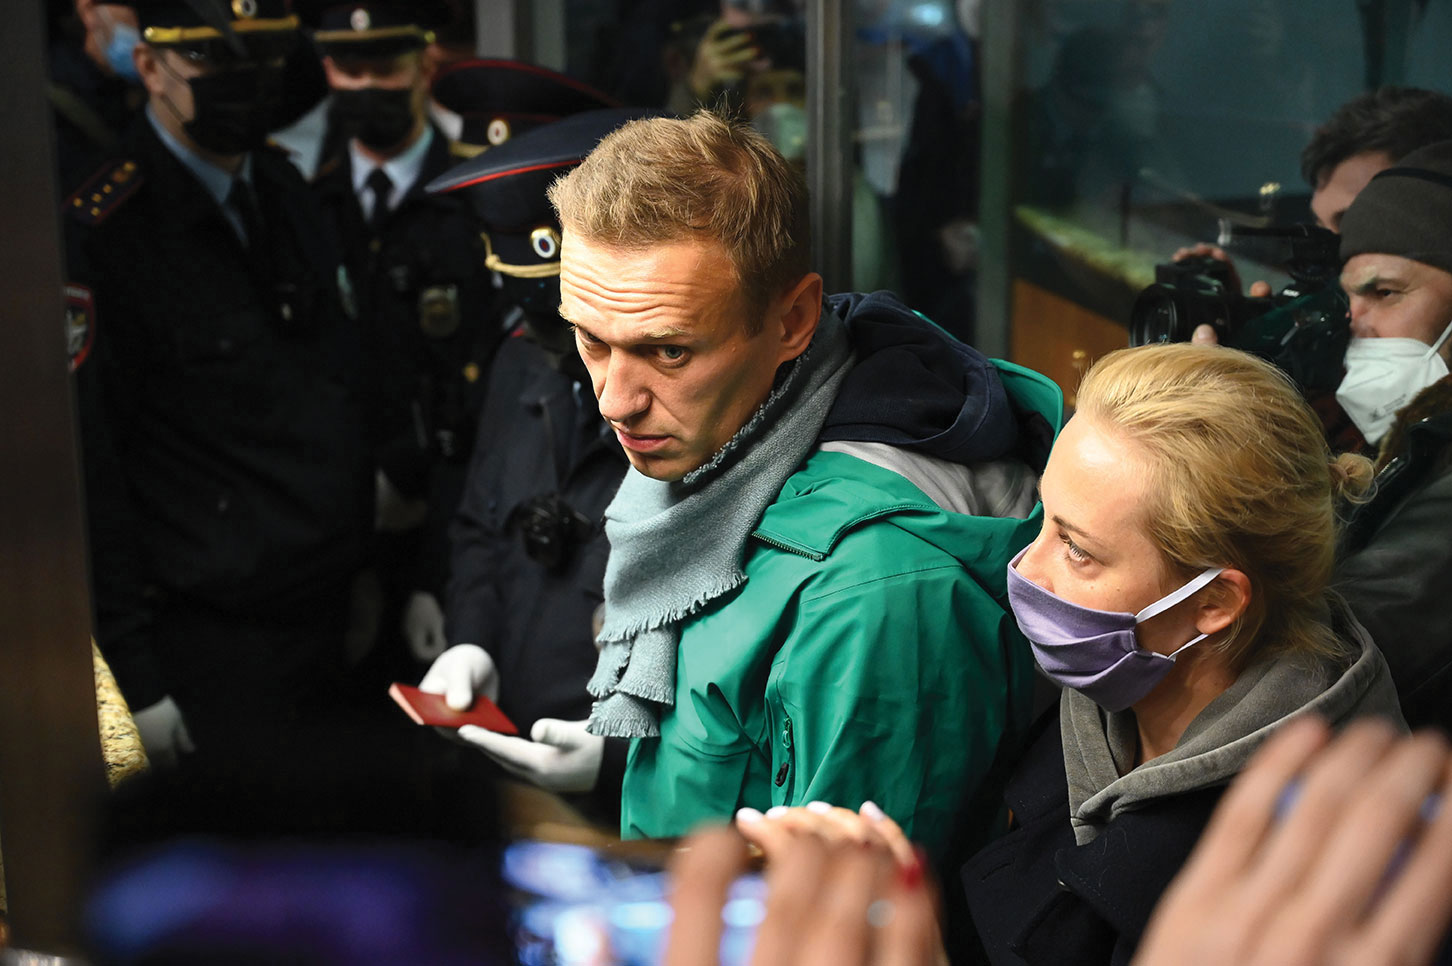 Russie: Navalny dénonce une "parodie de justice" après son arrestation